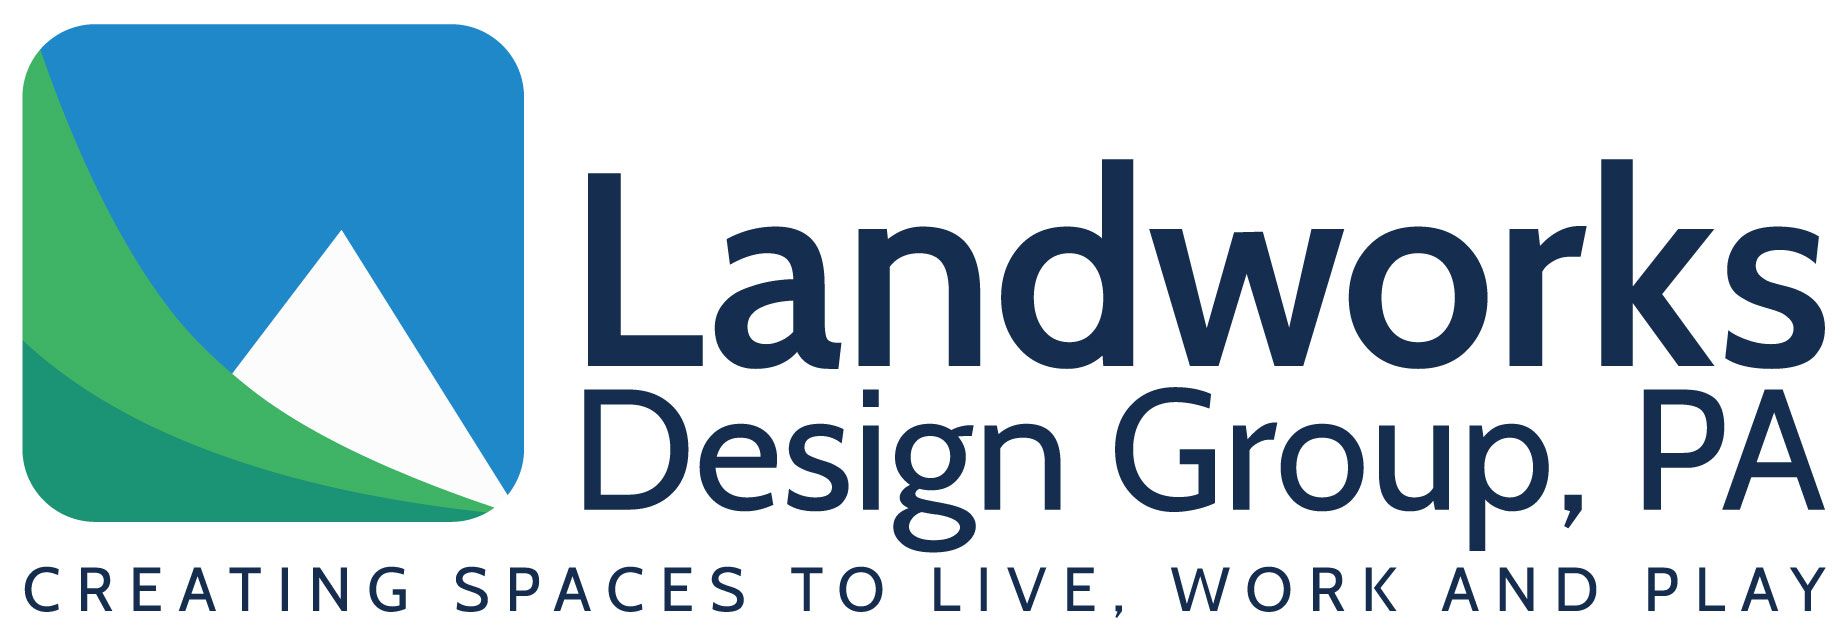 Landworks Design Group, PA